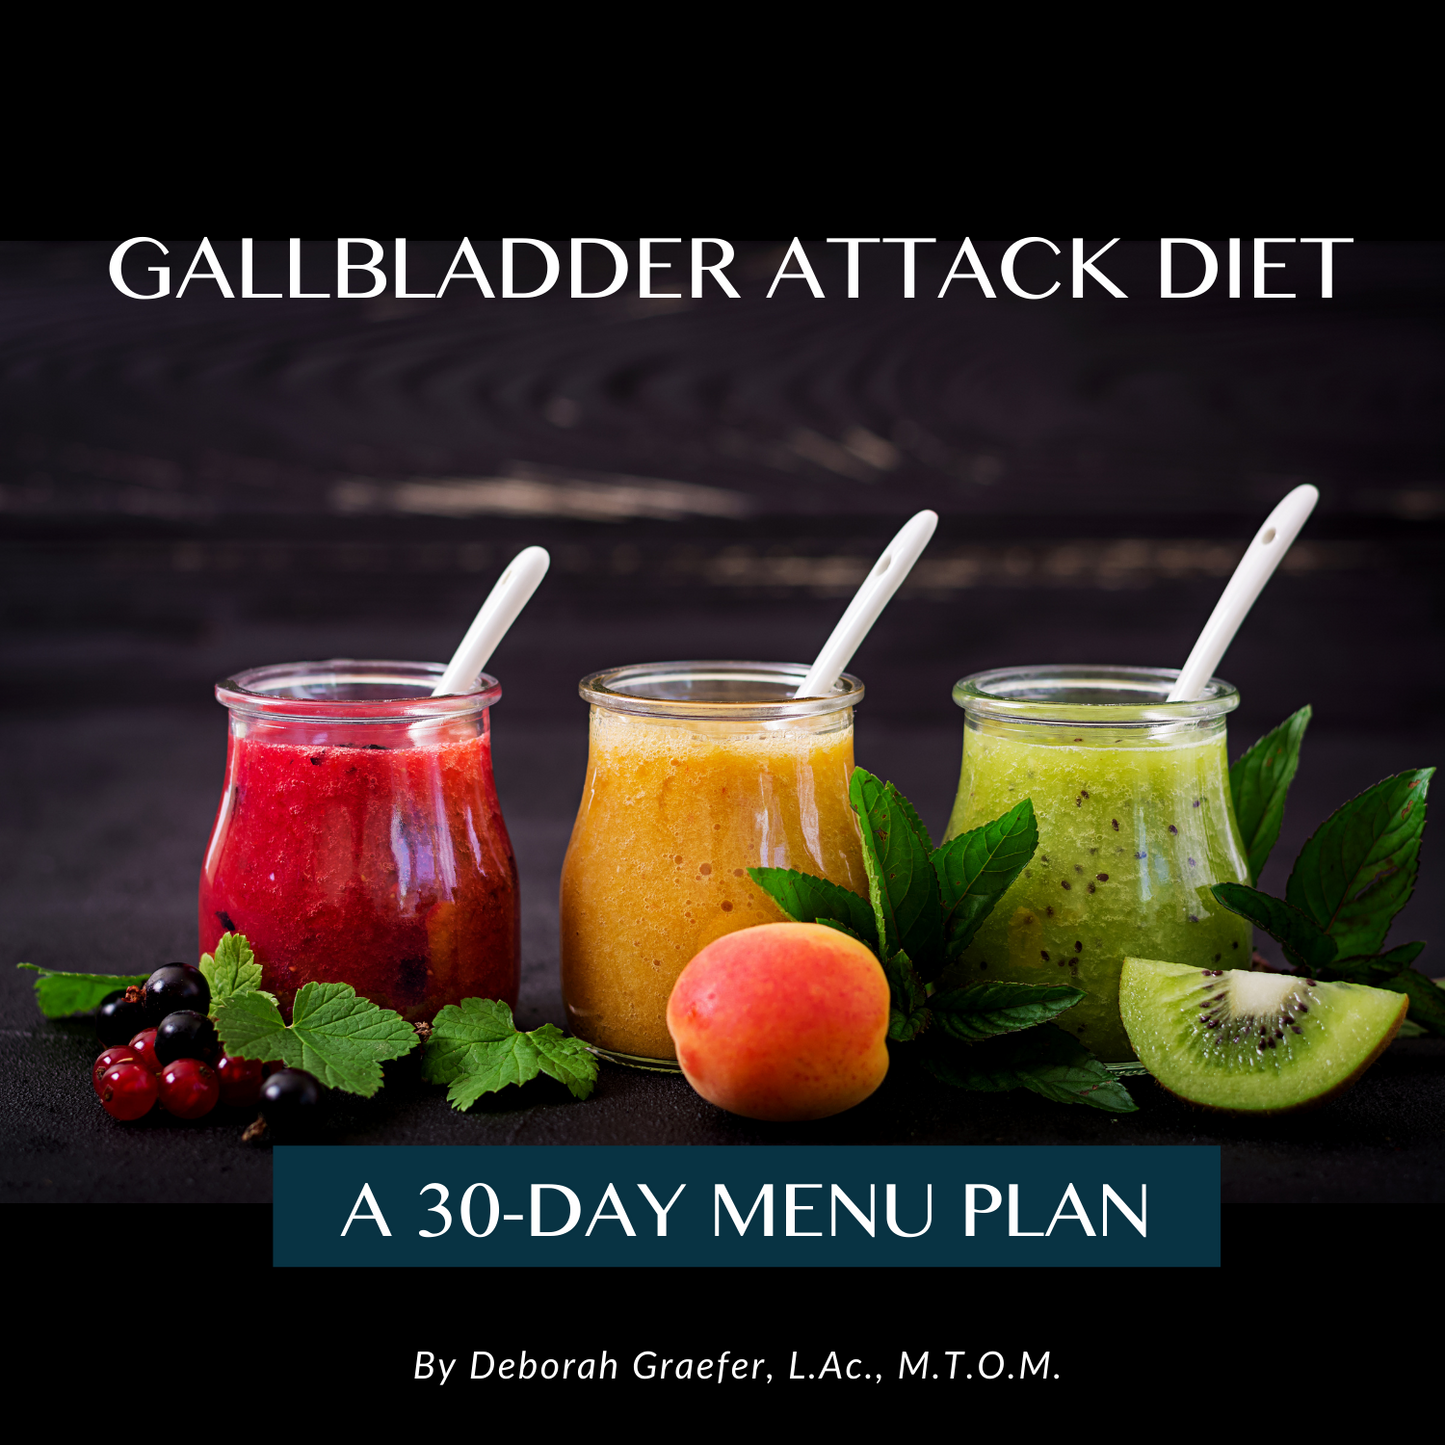 Gallbladder Attack Diet - Download Your 30-Day Menu Plan